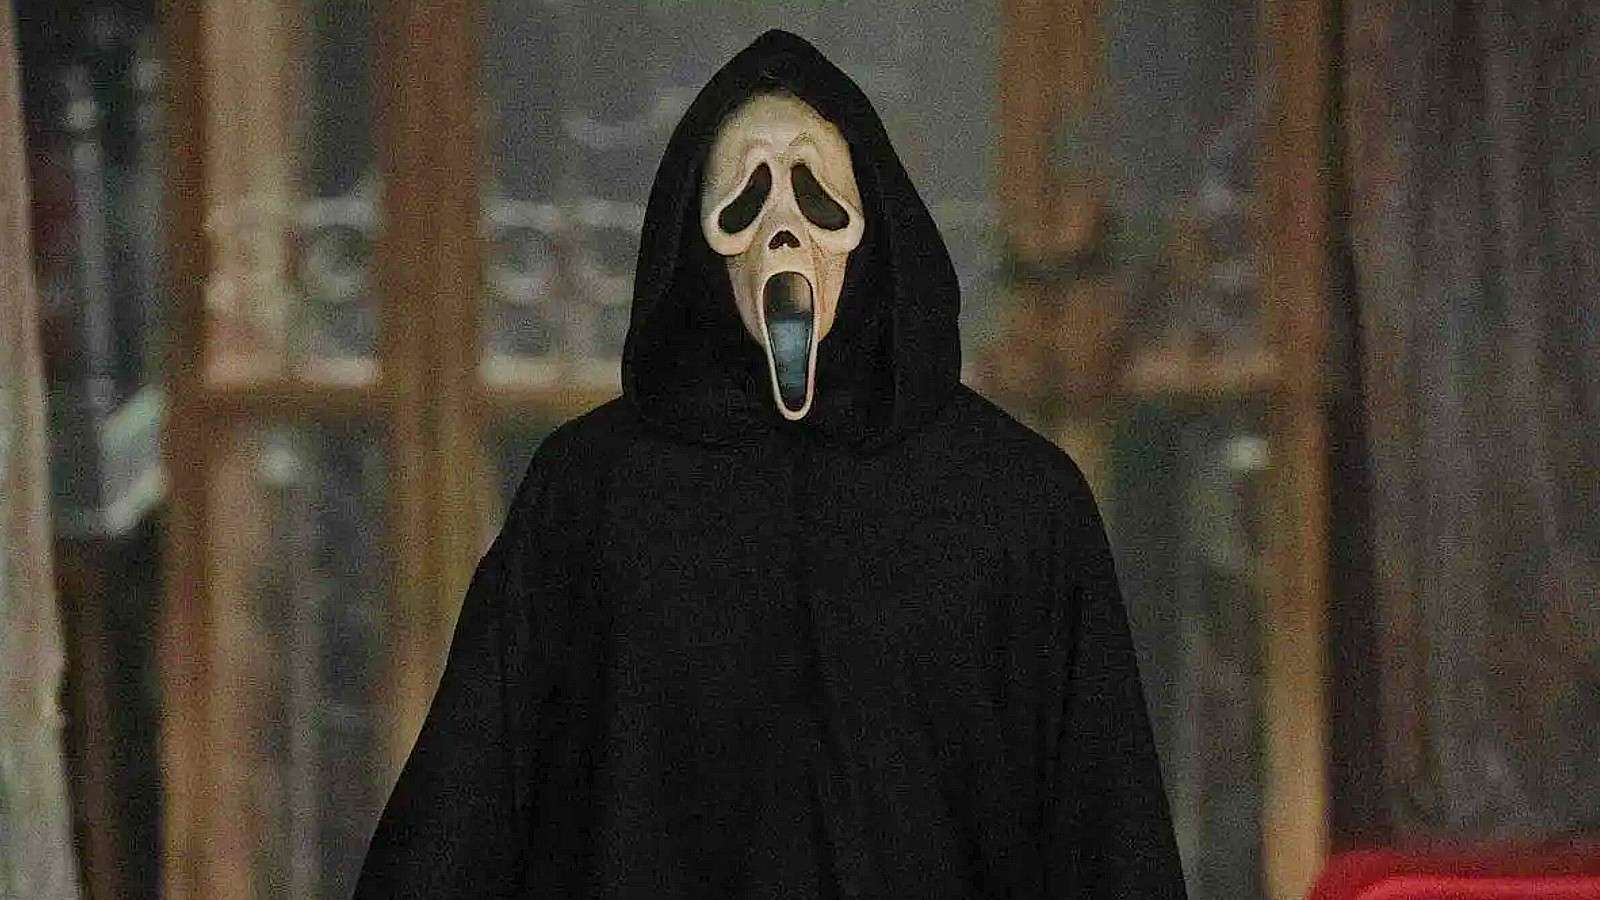 A still from Scream 6